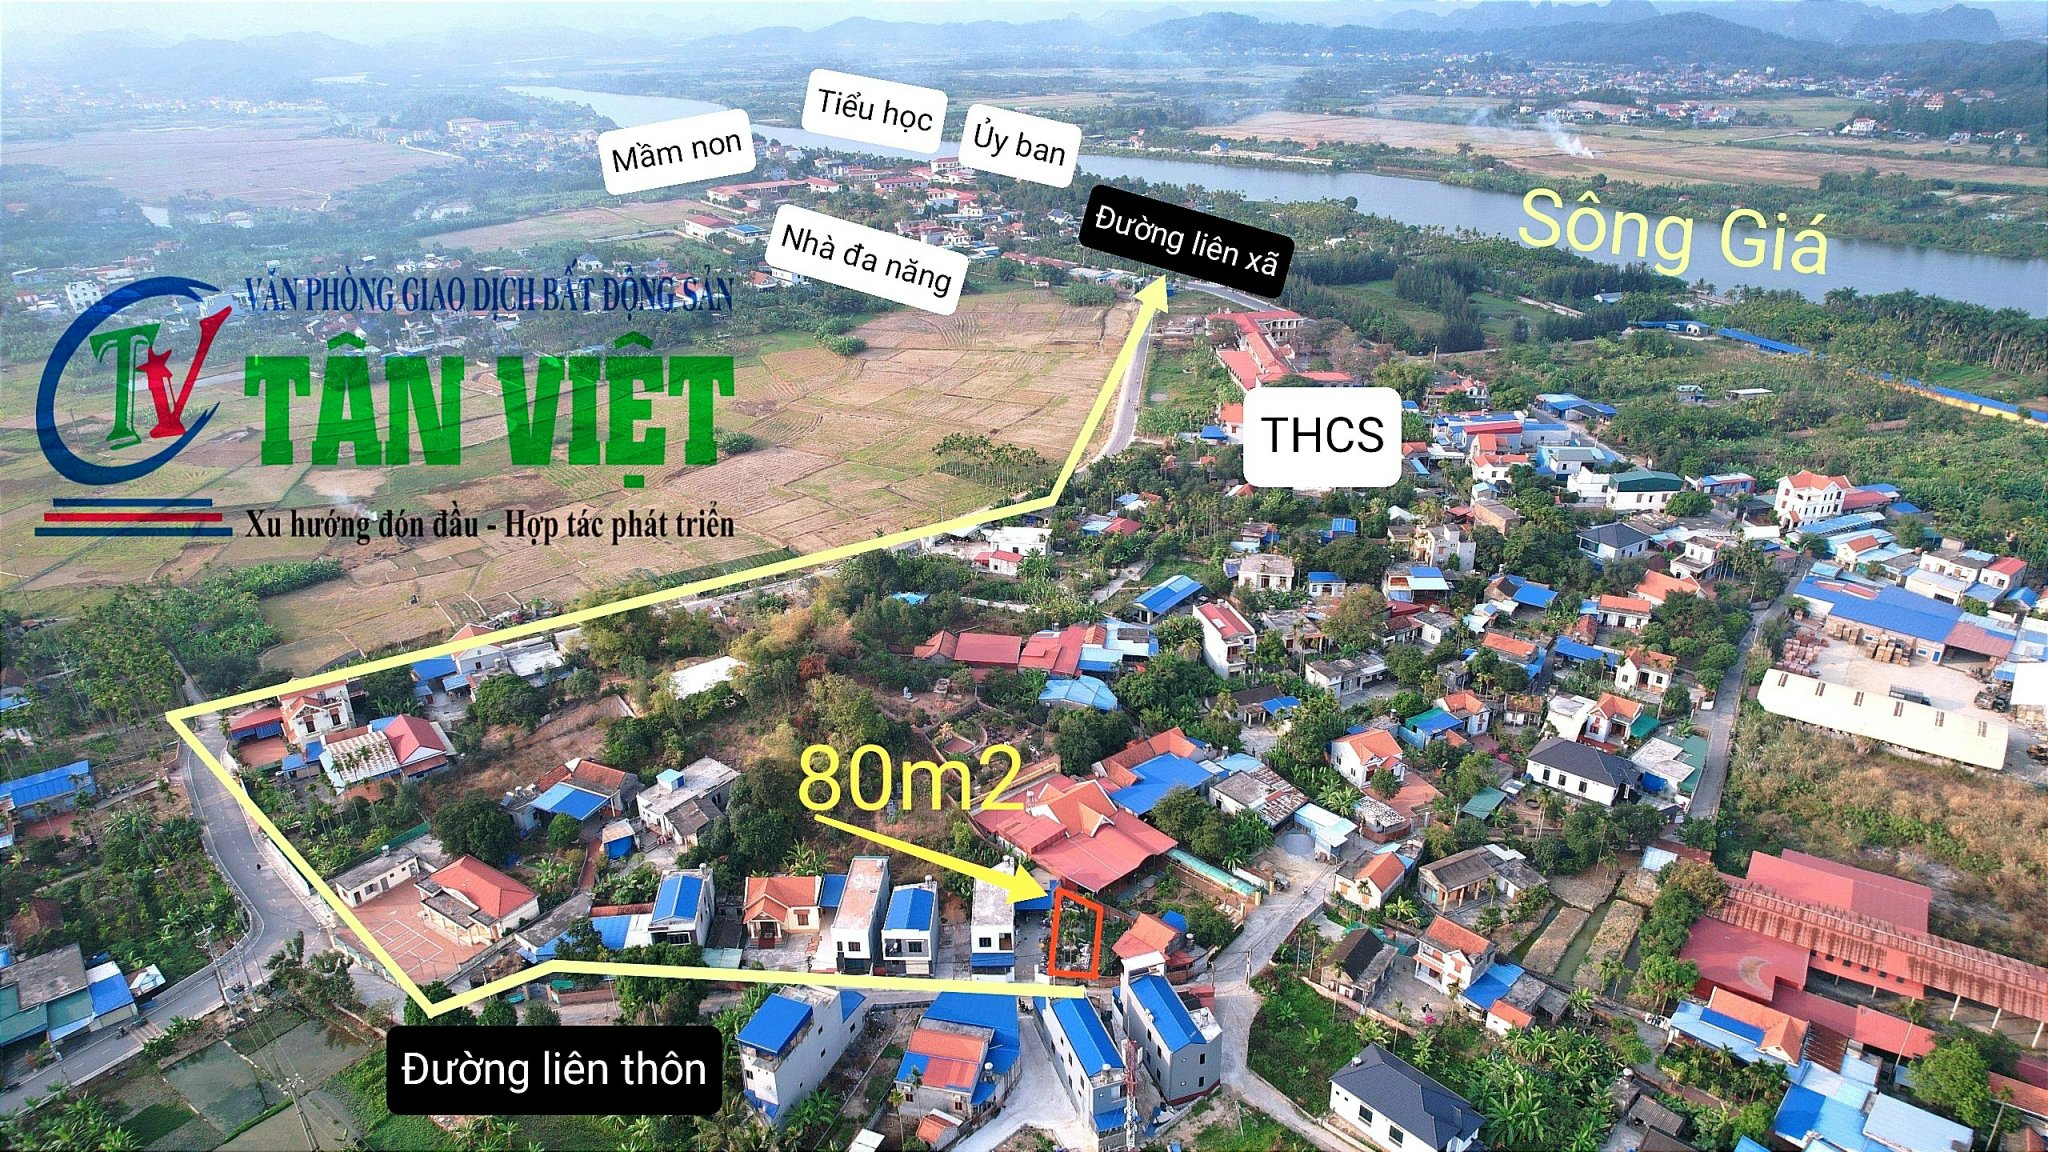 Bán lô đất 80m2 tại Kênh Giang, Thủy Nguyên, Hải Phòng